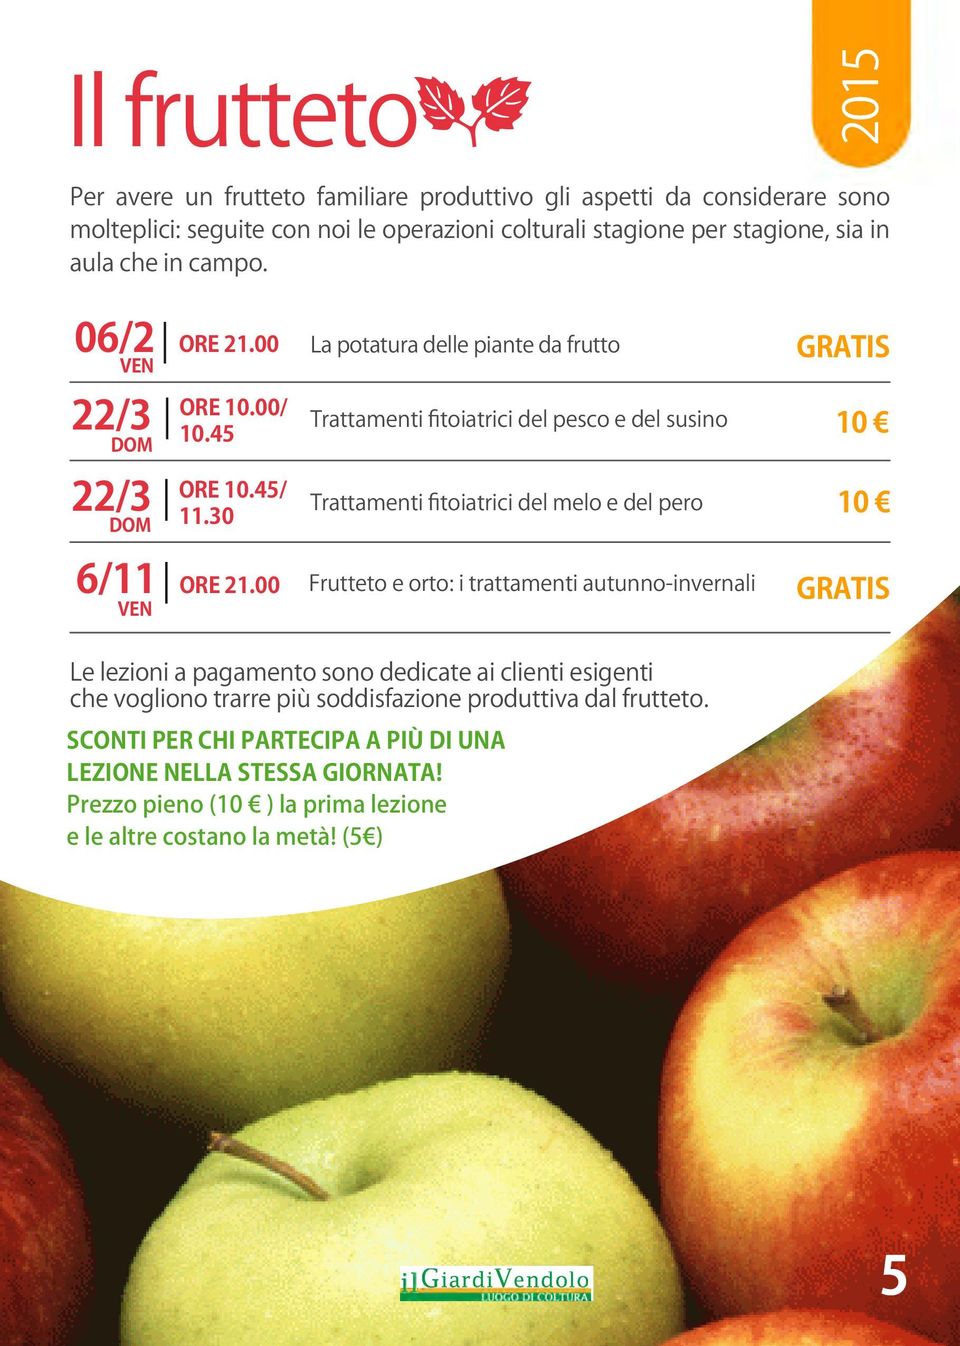 30 Trattamenti fitoiatrici del melo e del pero 6/11 VEN ORE 21.